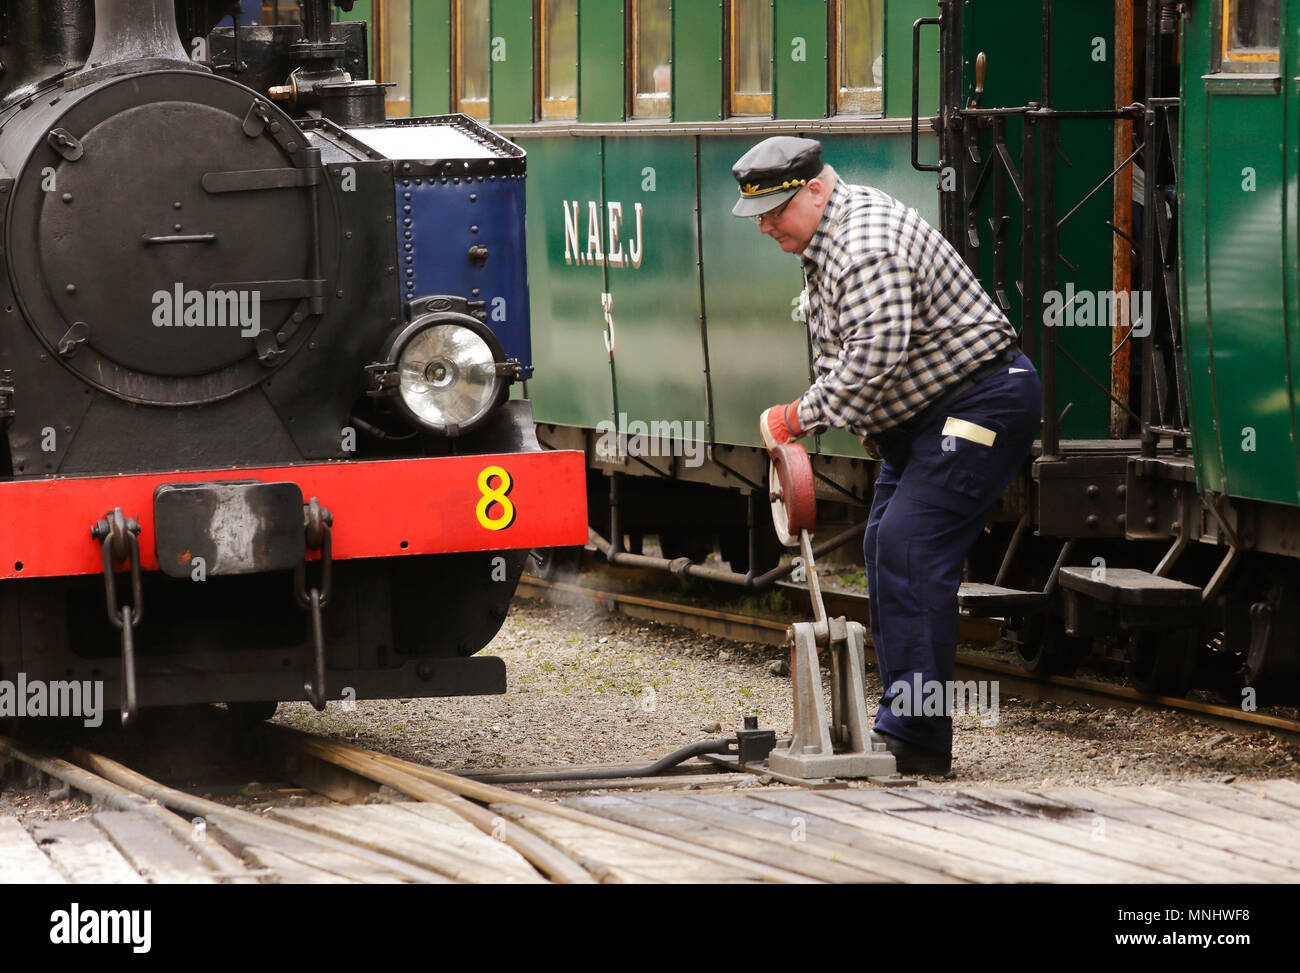 Mariefred, Schweden - 11. Mai 2013: ein Mann, Anschluss für ther Zug im Hof neben der Dampflok Nr. 8 Emsfors, Schalter am railw Stockfoto